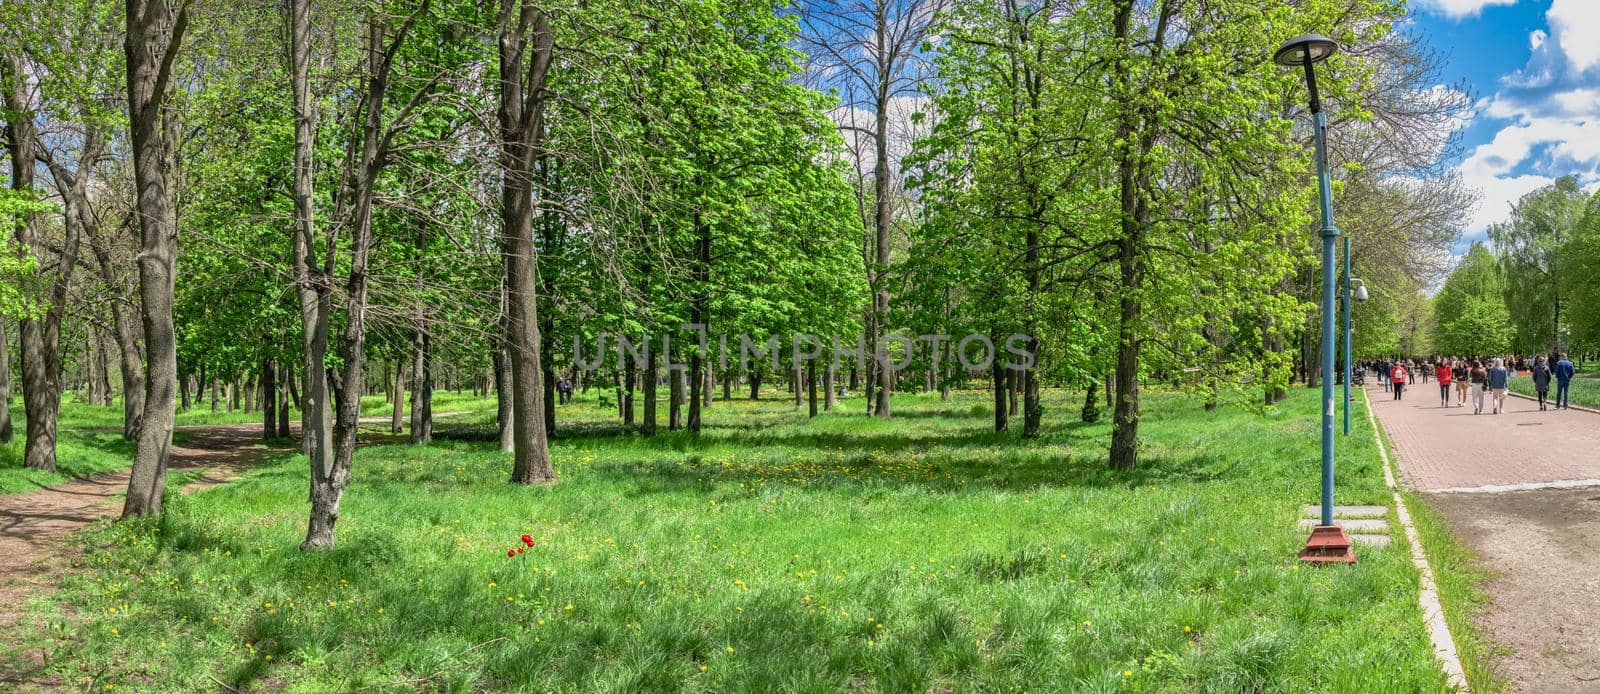 Kropyvnytskyi, Ukraine 09.05.2021. Kropyvnytskyi arboretum in the city park on a sunny spring day